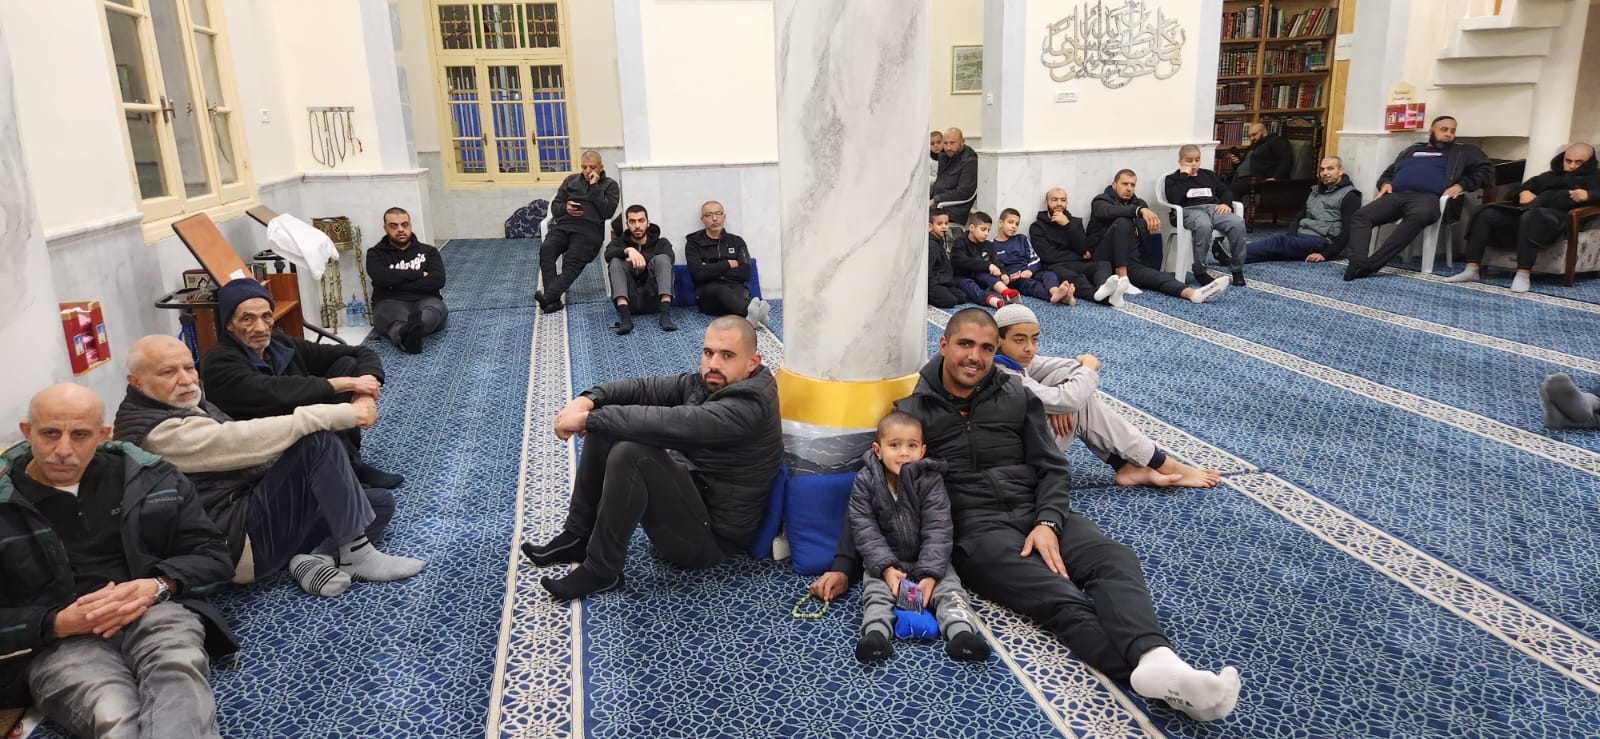 يافا: بالصور الأمسية الأسبوعية (مجالس الإيمان) في مسجد النزهة 